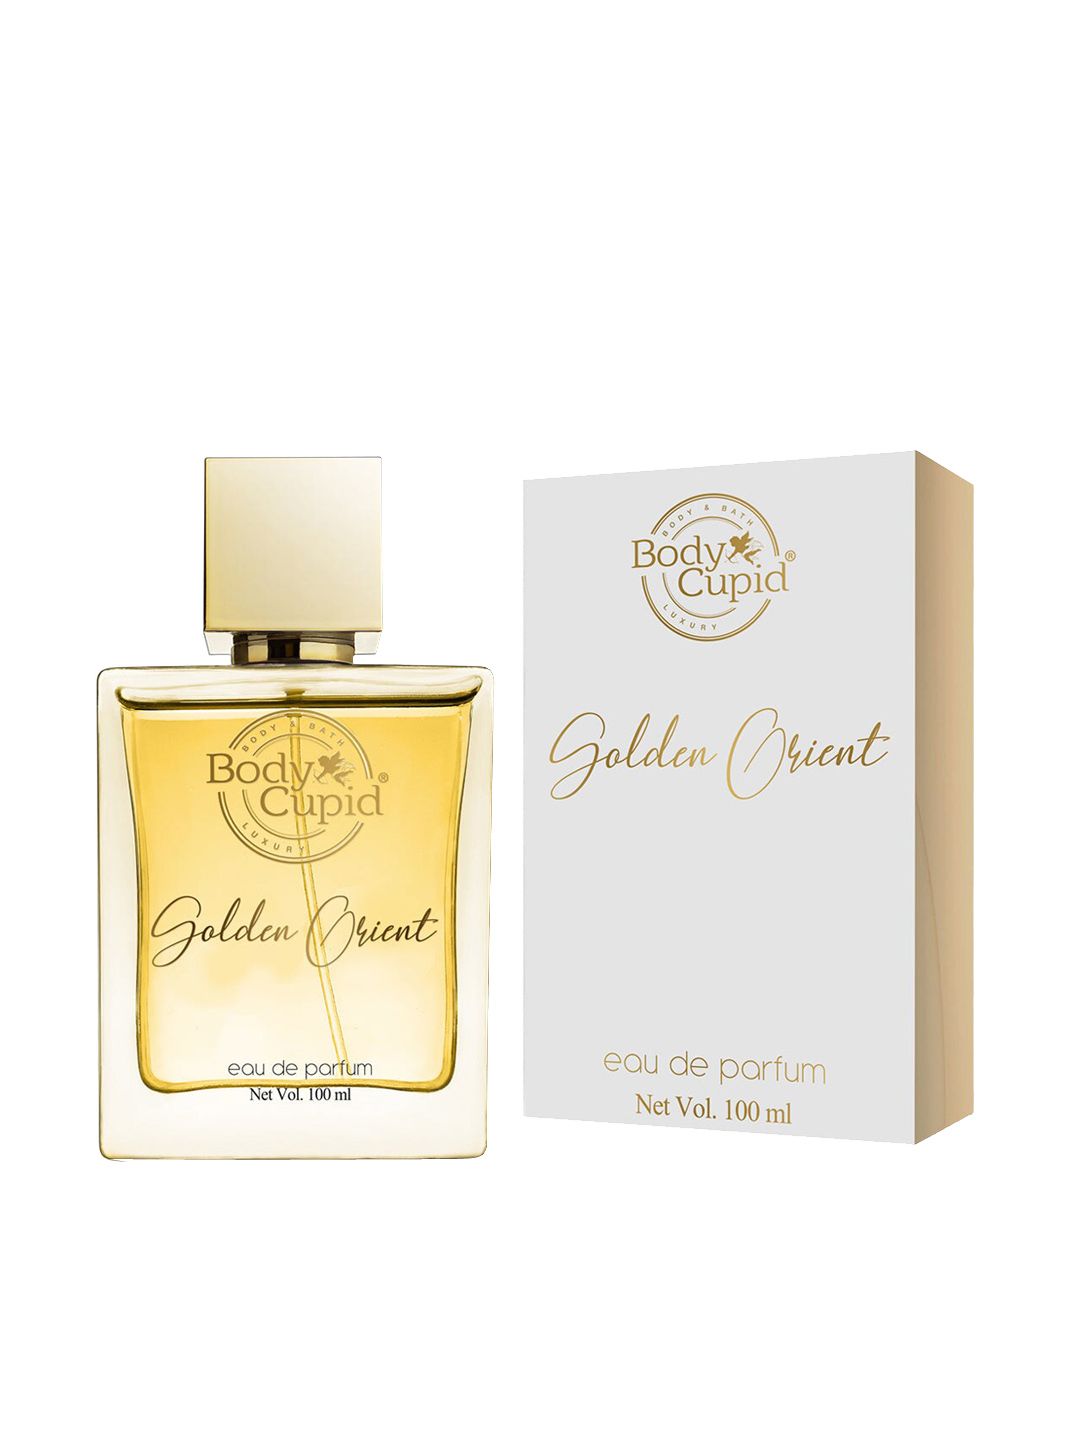 Body Cupid Golden Orient Eau de Parfum 100 ml Price in India